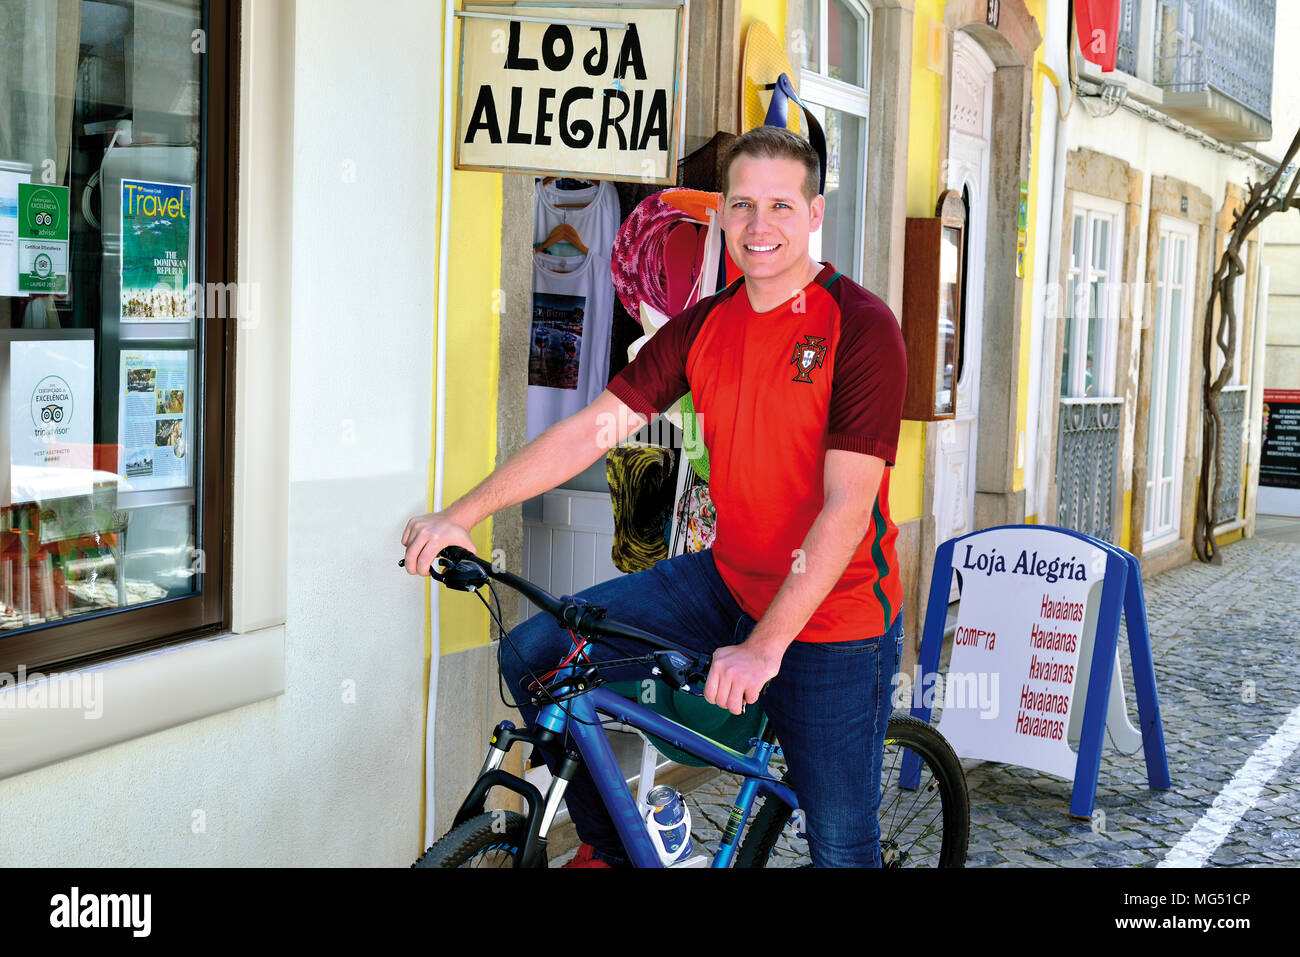 Jeune homme blond avec maillot de l'équipe nationale de football portugais assis sur un vélo et souriant à l'appareil photo Banque D'Images